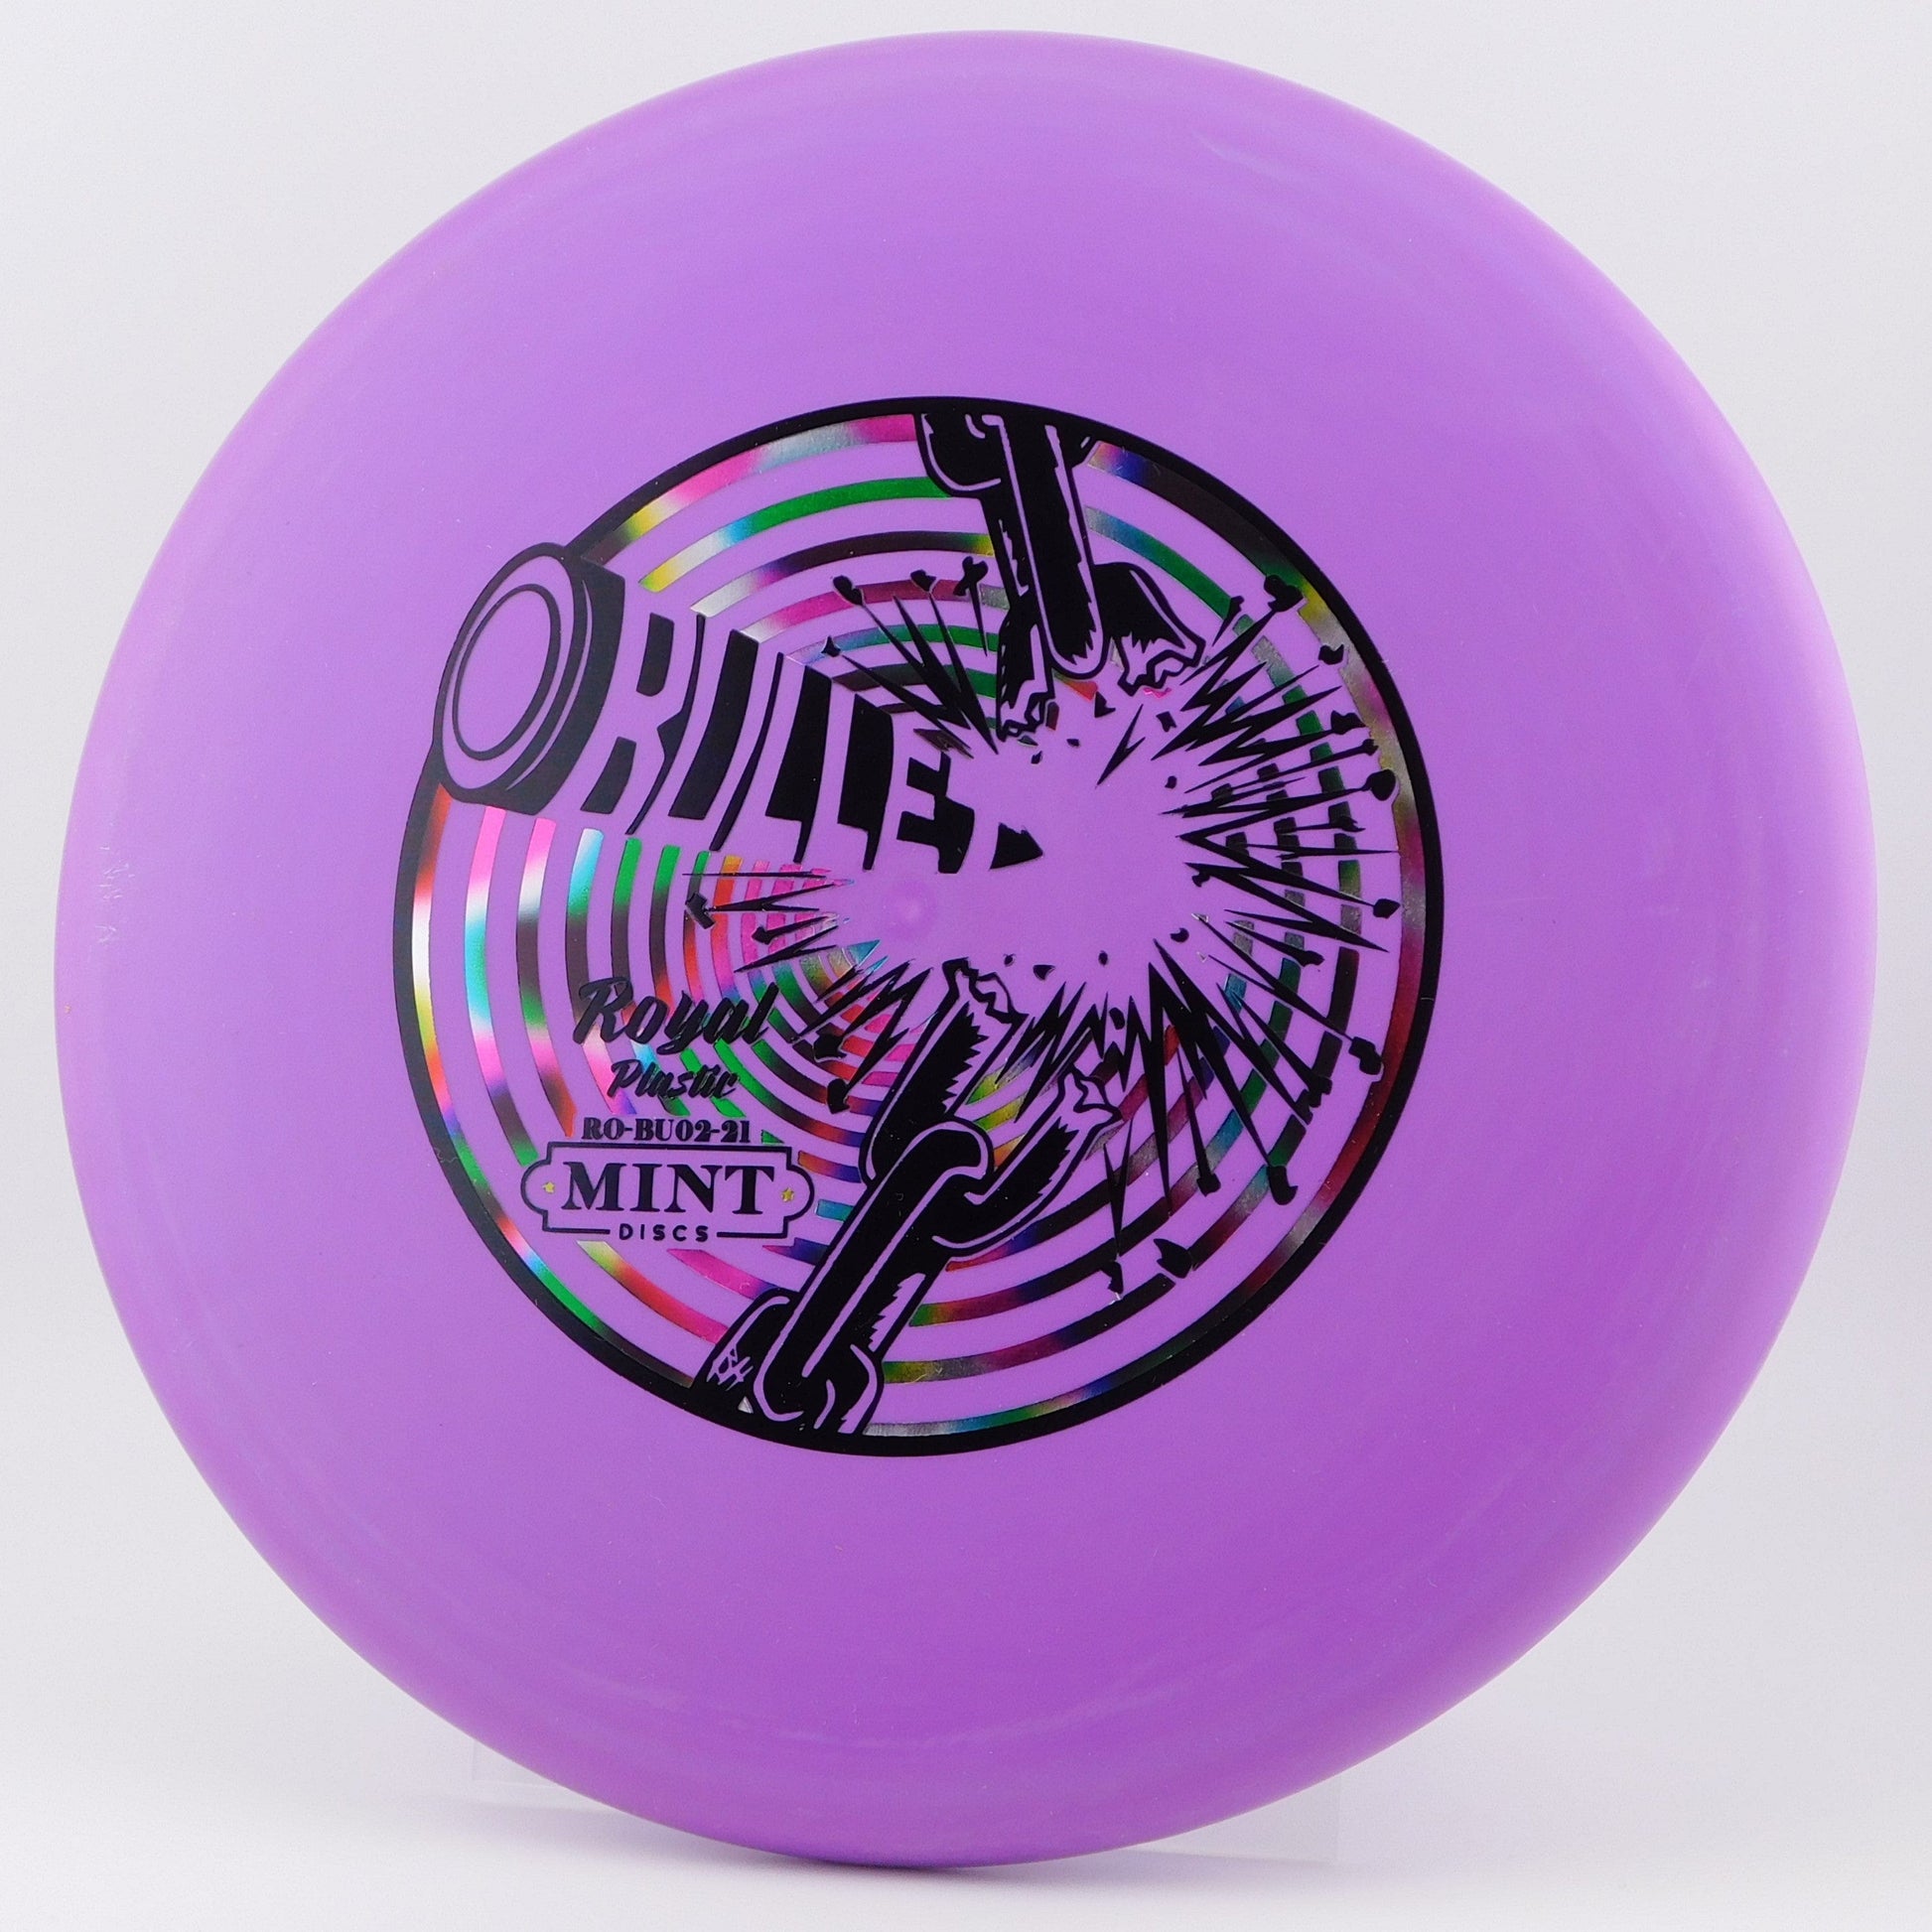 Mint Discs Bullet - Royal (Medium) 2│4│0│1 169g - Purple - Mint Discs Bullet - Royal - 100115